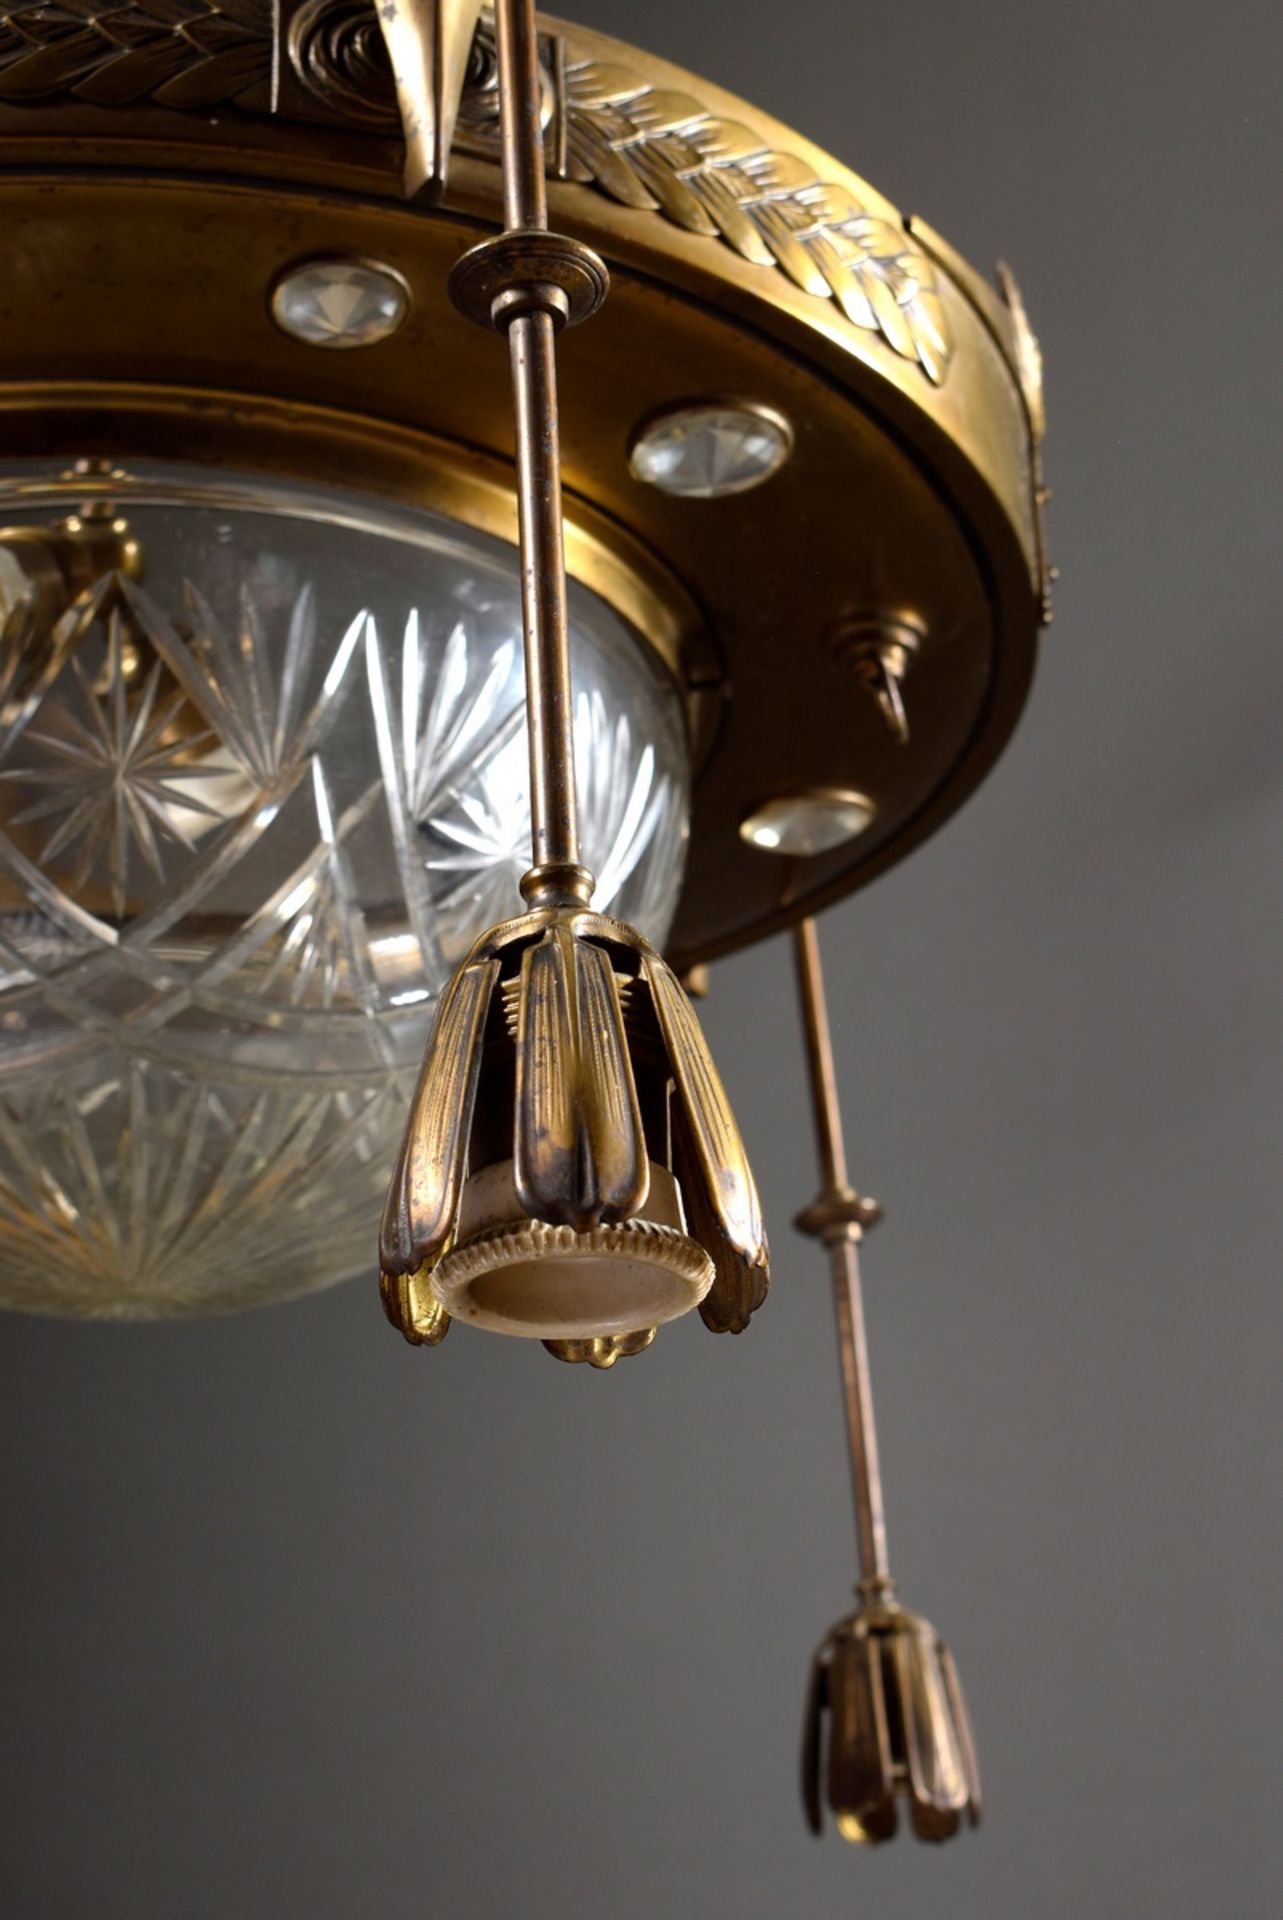 Jugendstil Deckenlampe mit geschliffener Glaskuppel und hängenden Lichtquellen in gepunztem Messing - Bild 3 aus 7